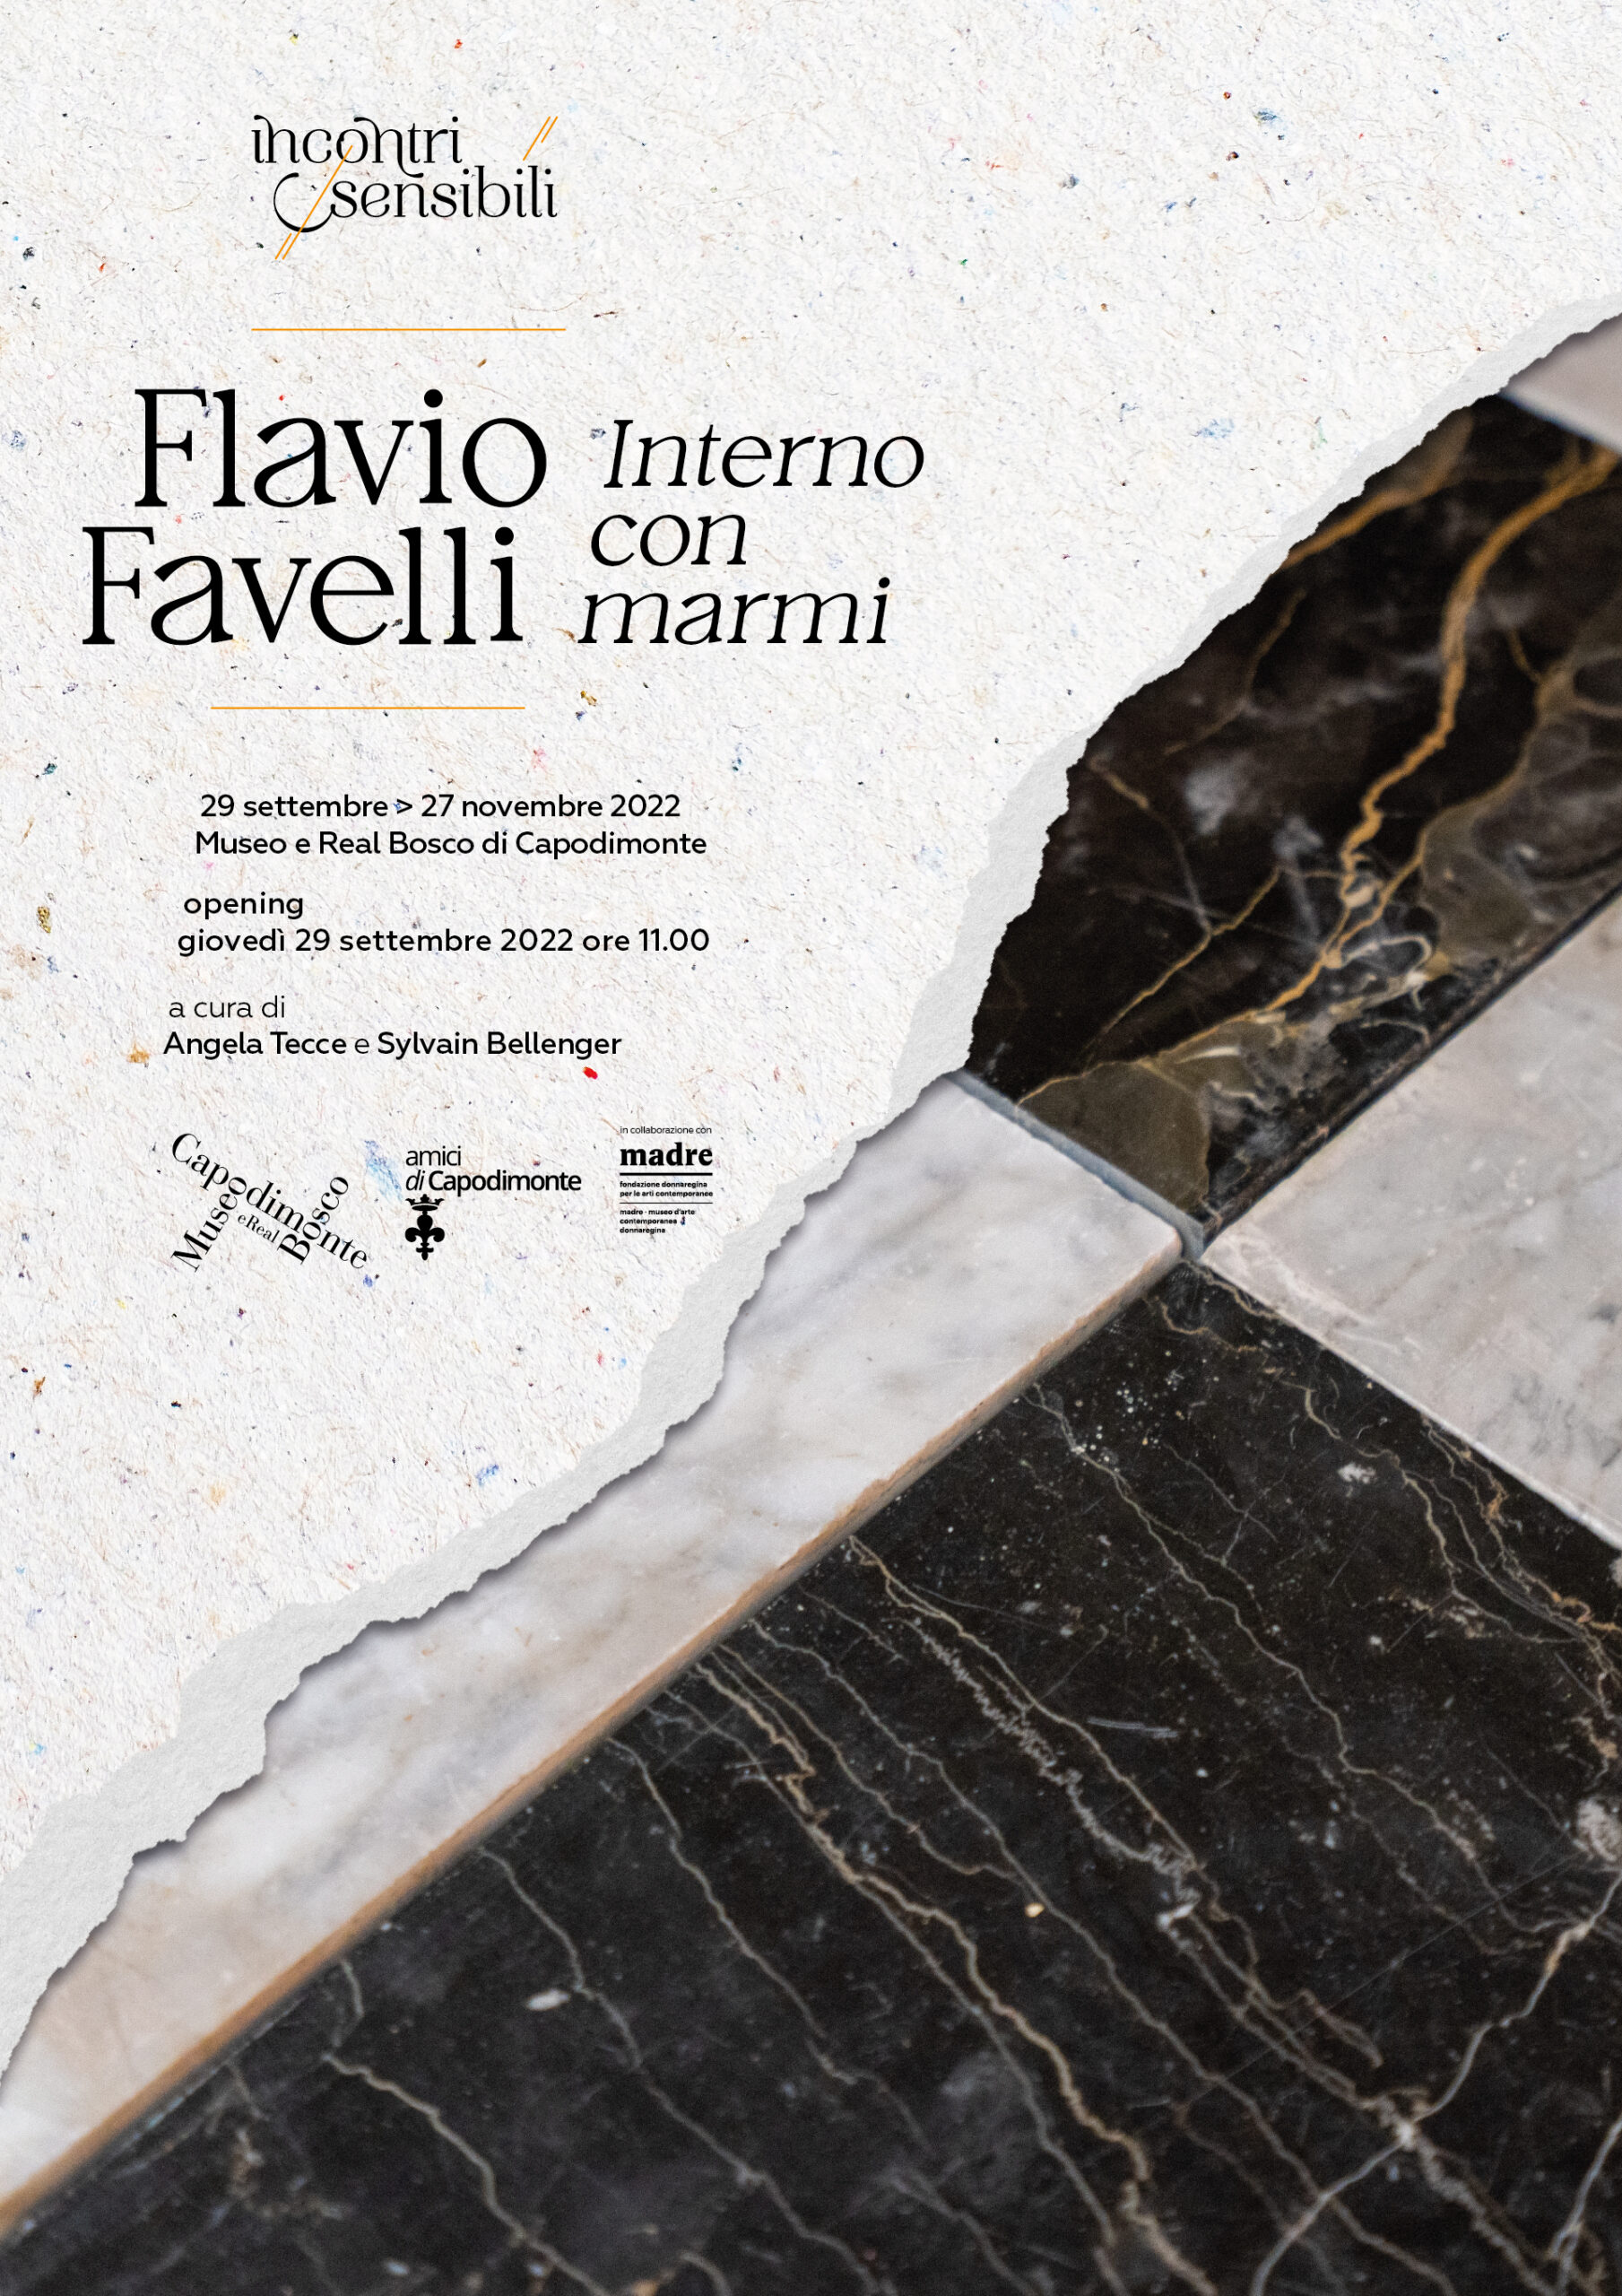 Inaugurazione mostra ​"Flavio Favelli. Interno con marmi" al Museo e Real Bosco di Capodimonte